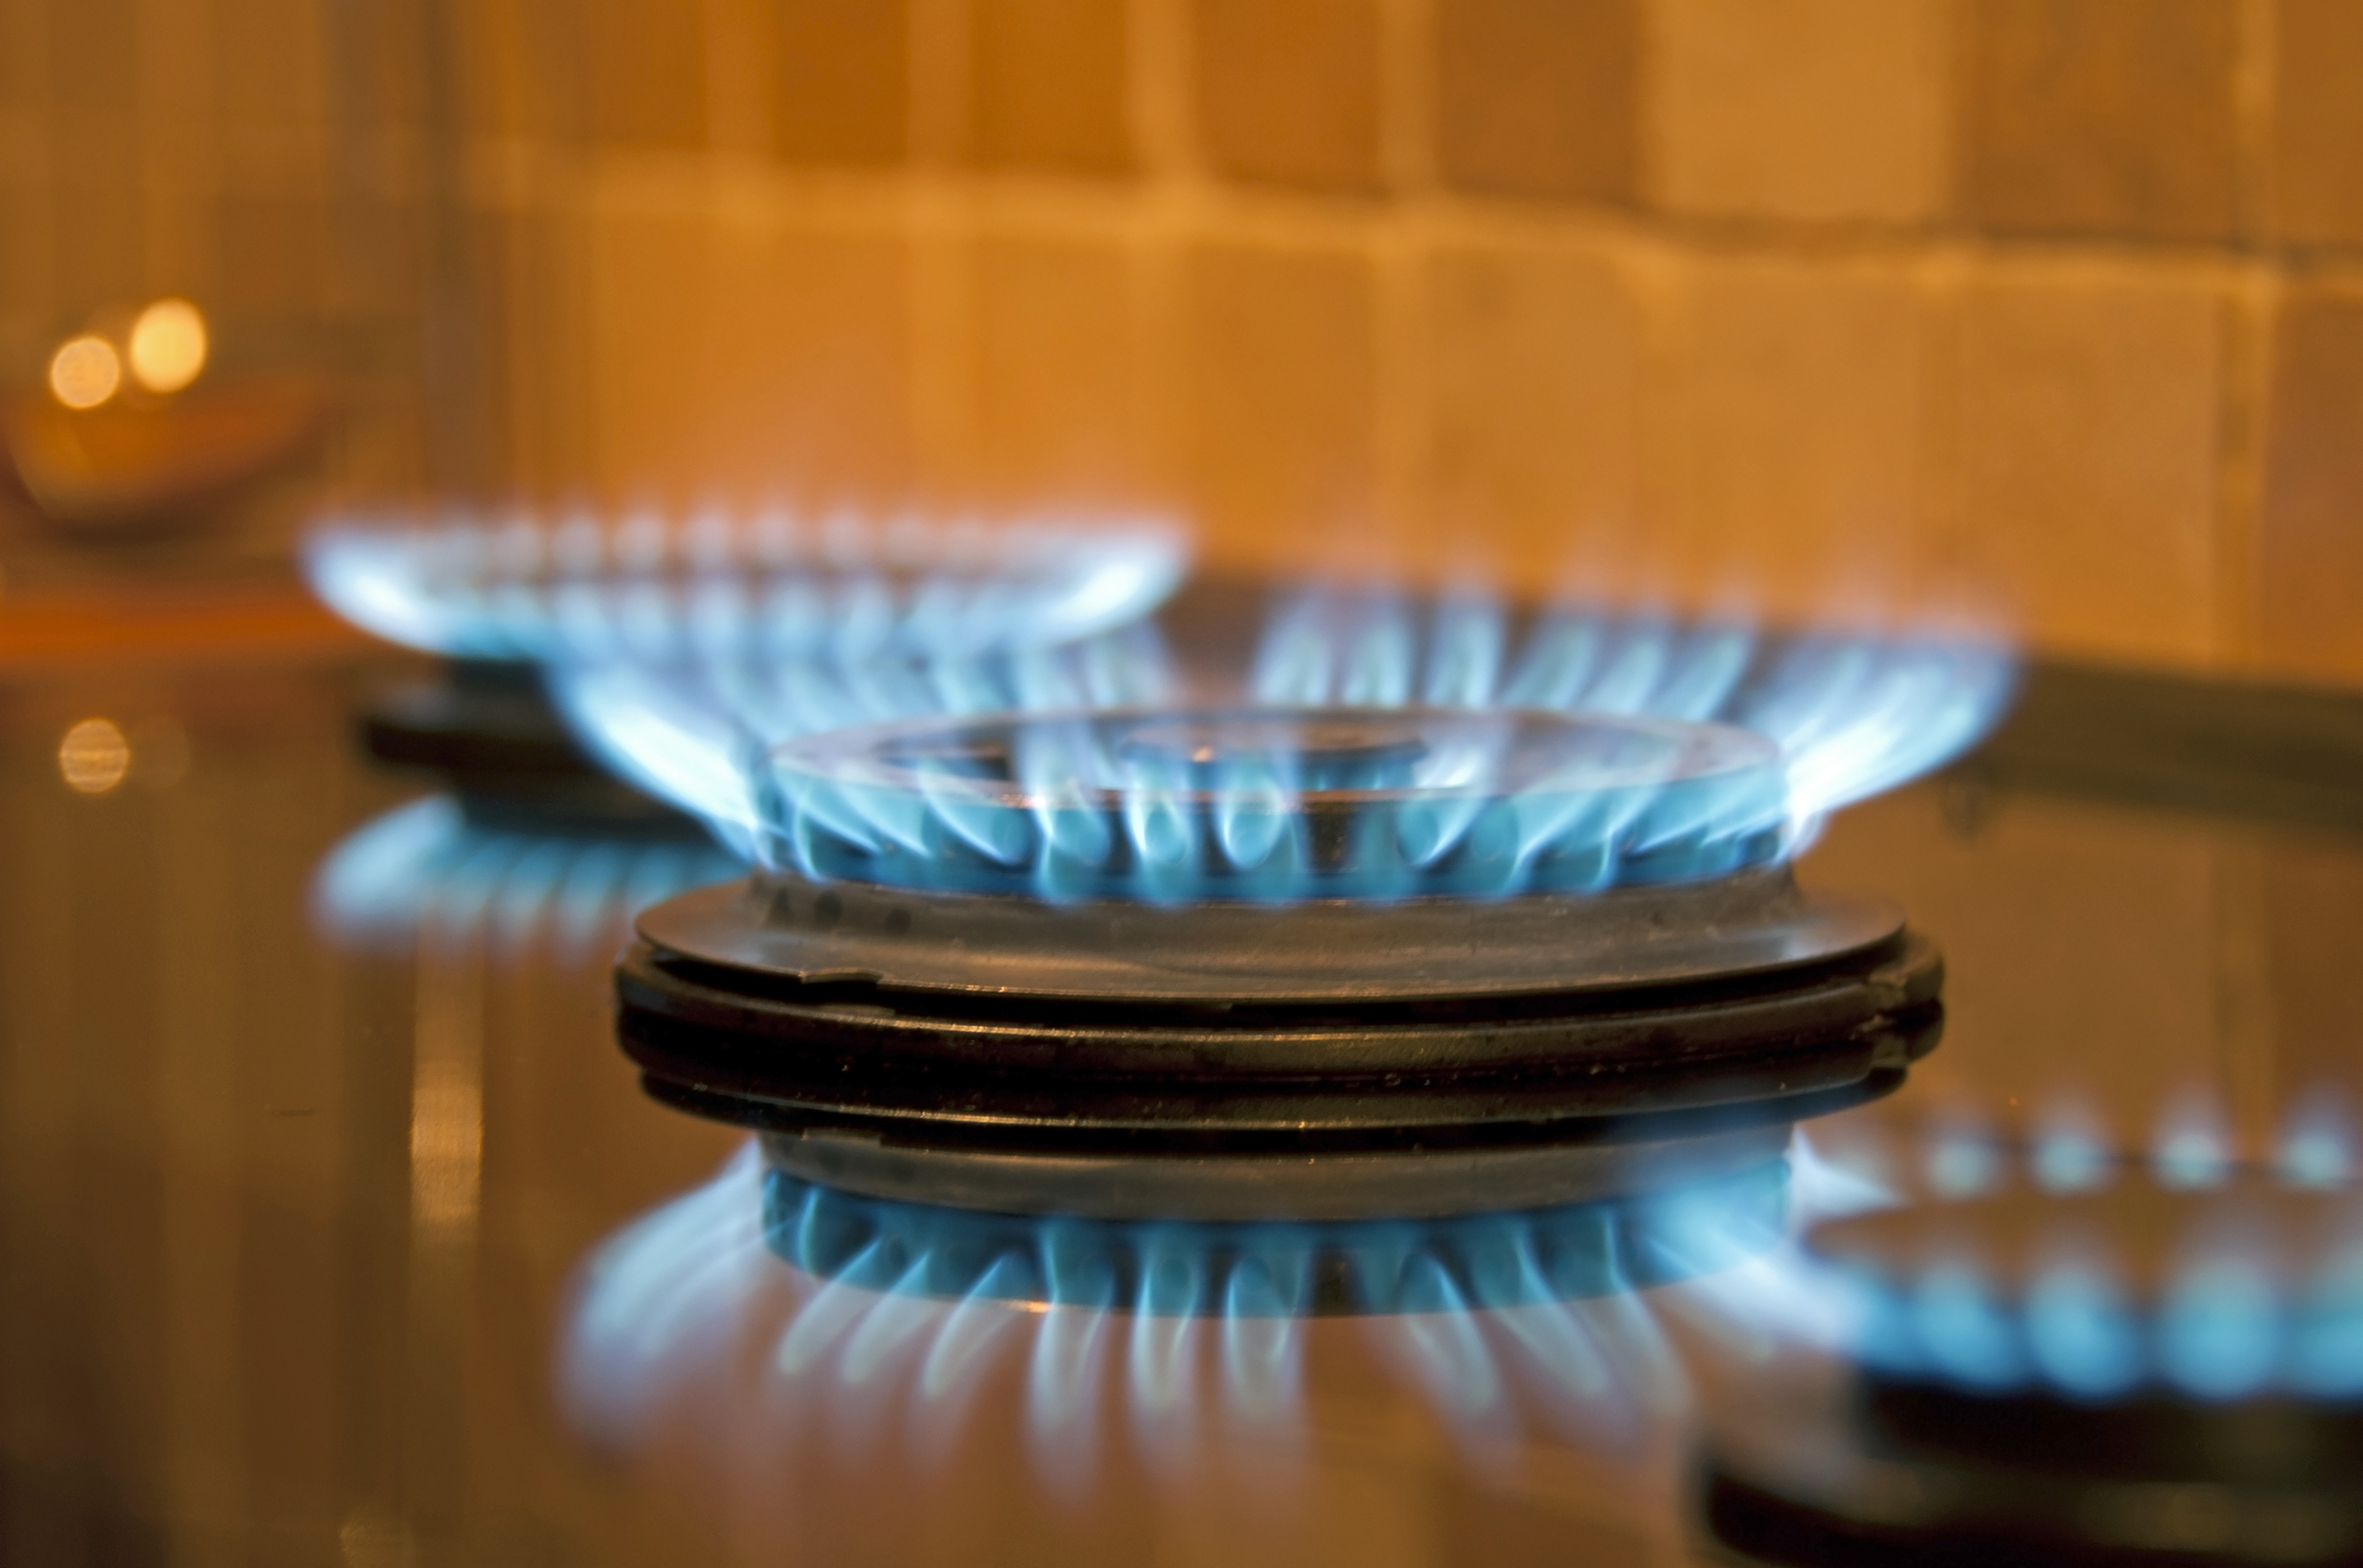 Factura gas, tarifa regulada o libre mercado. Fuego de una cocina de gas natural.